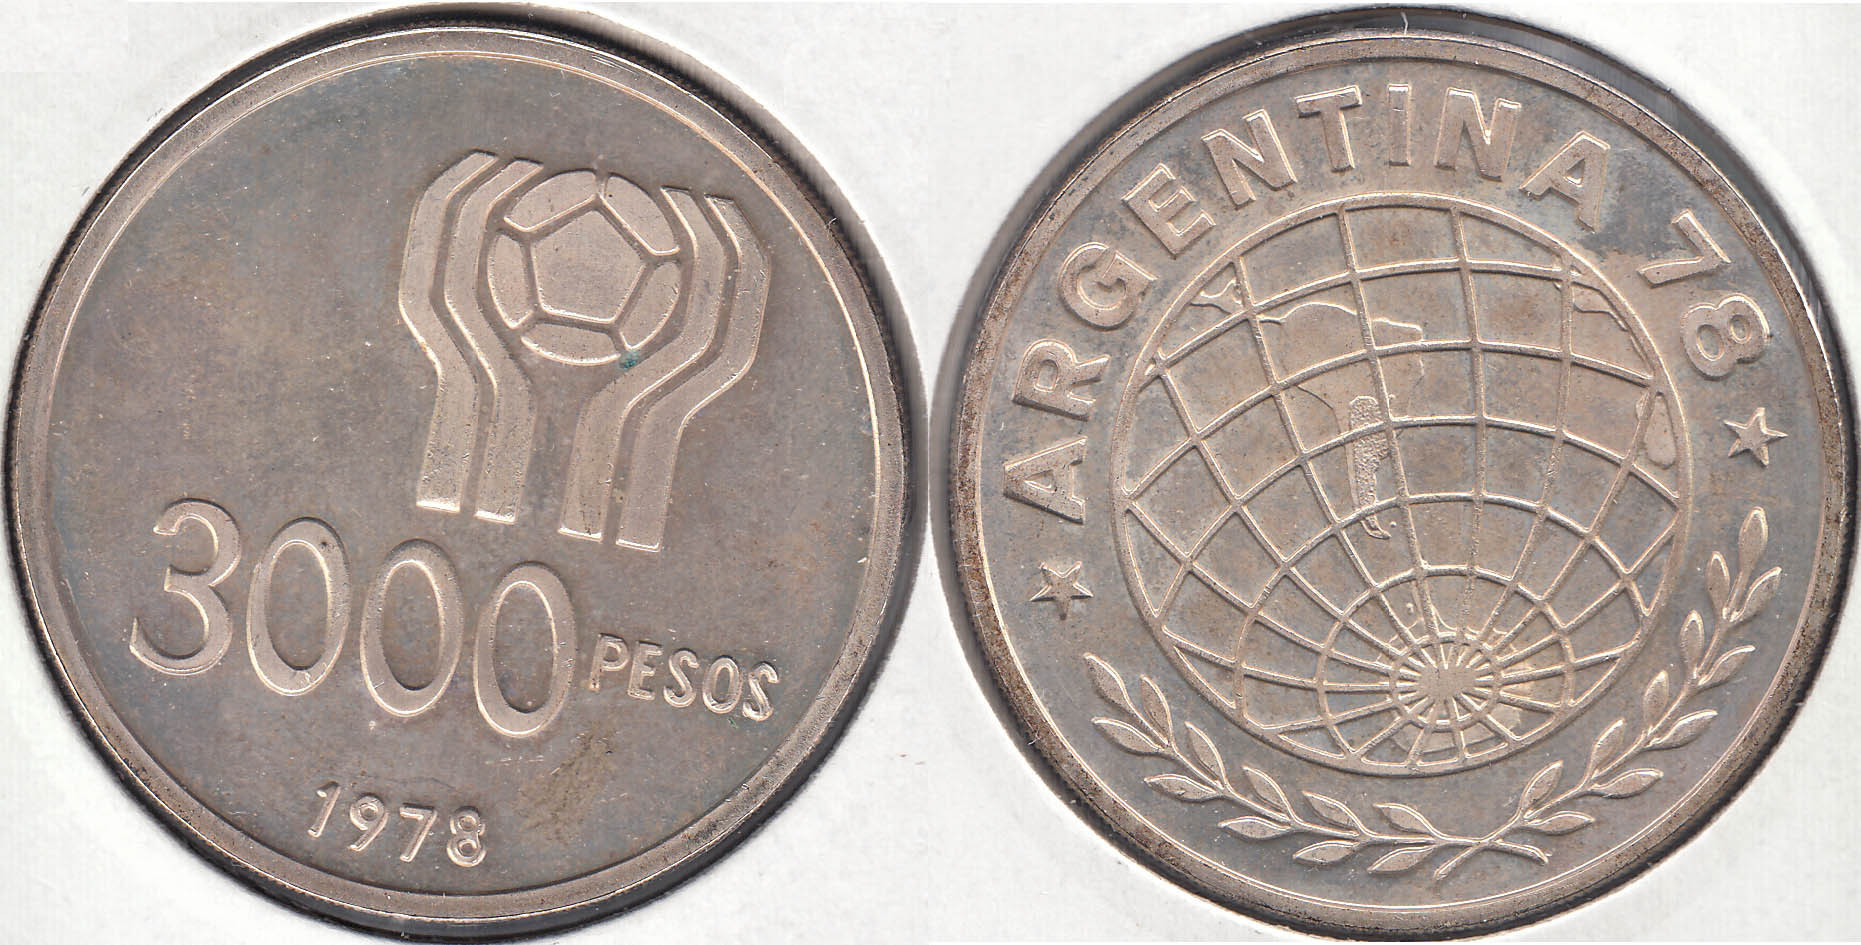 ARGENTINA. 3000 PESOS DE 1978. PLATA 0.900